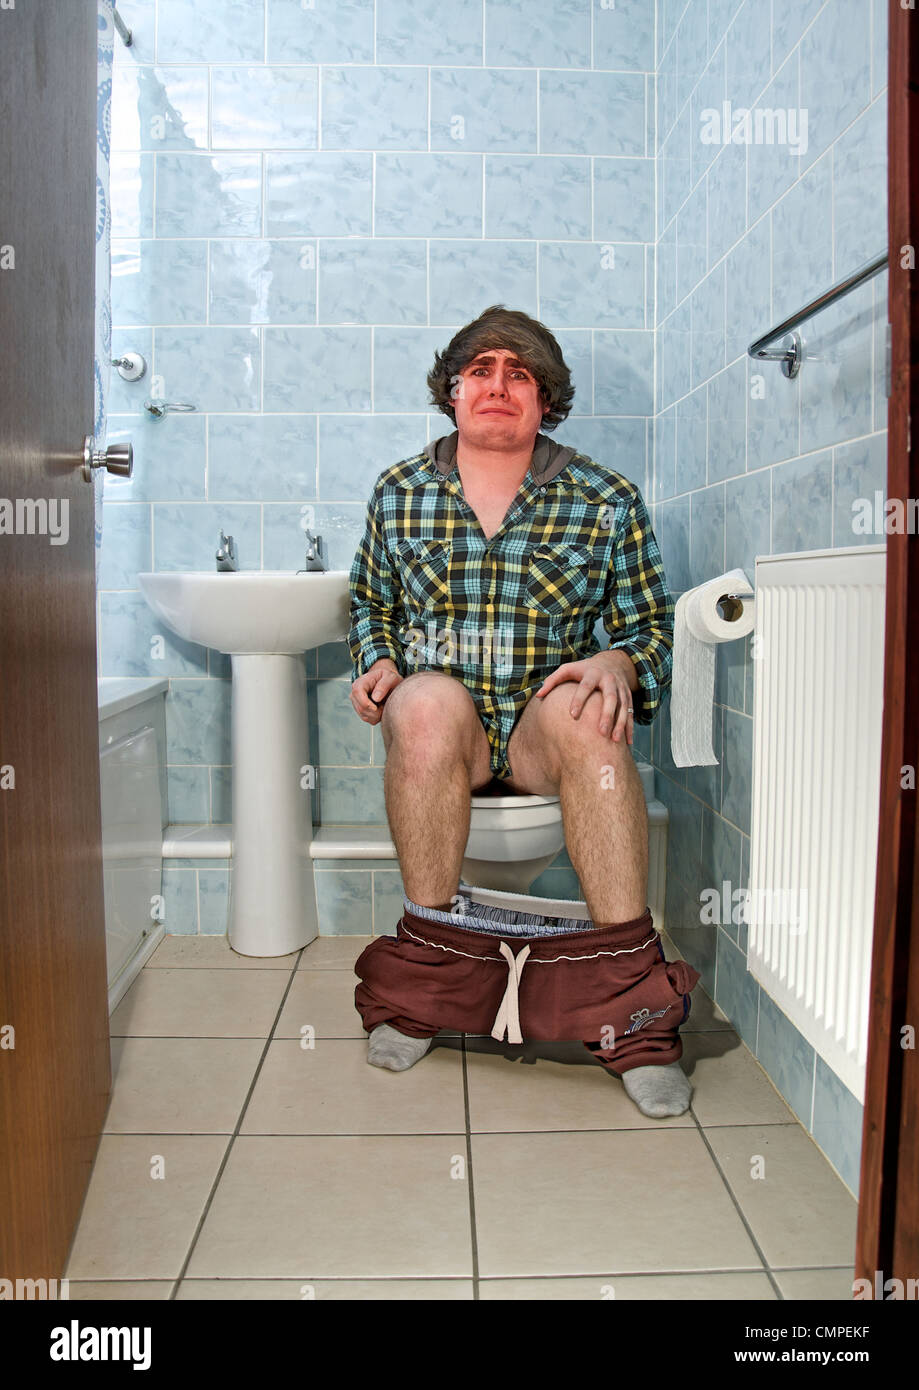 L'effort sur les toilettes Photo Stock - Alamy